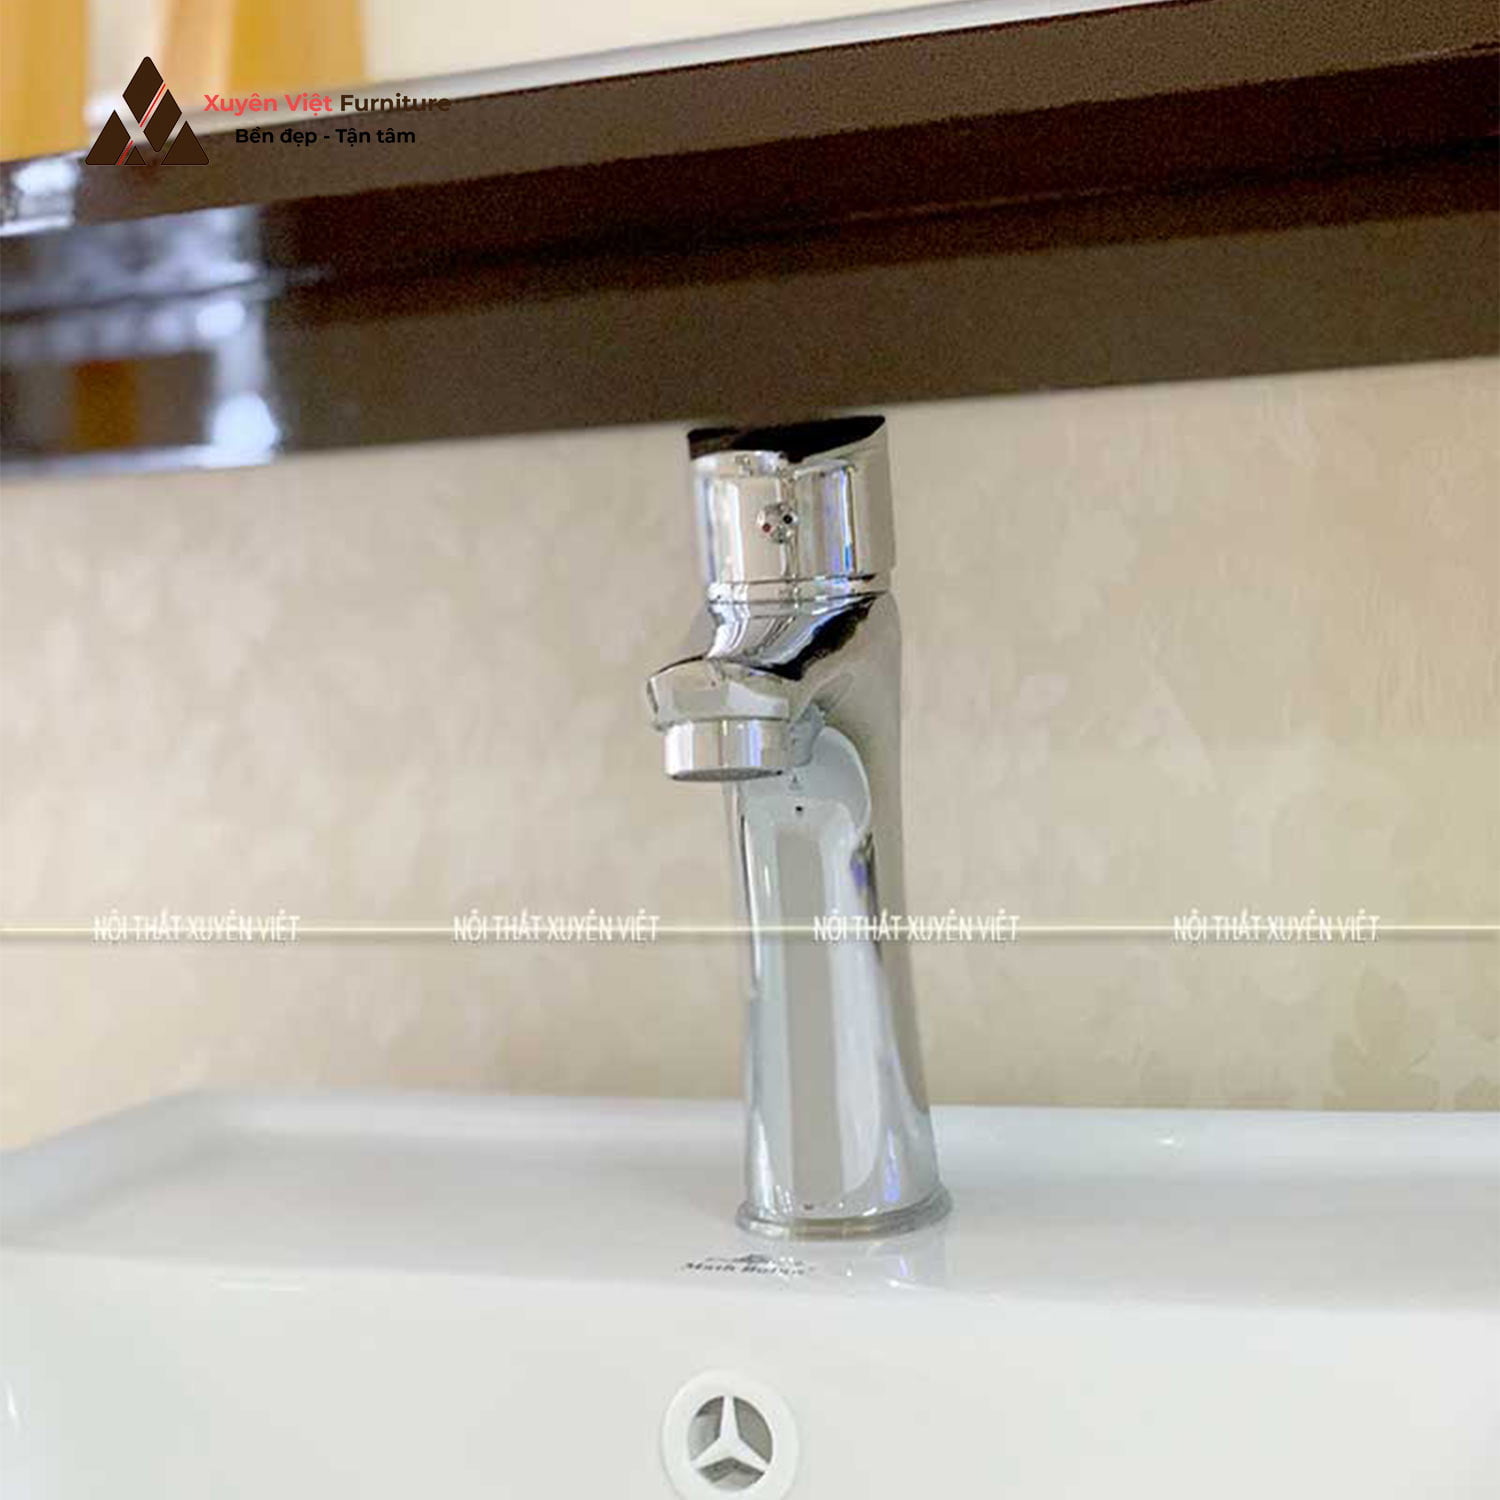 Vòi rửa lavabo thấp dài hiện đại XV-V17IN05 phù hợp với mọi không gian phòng tắm